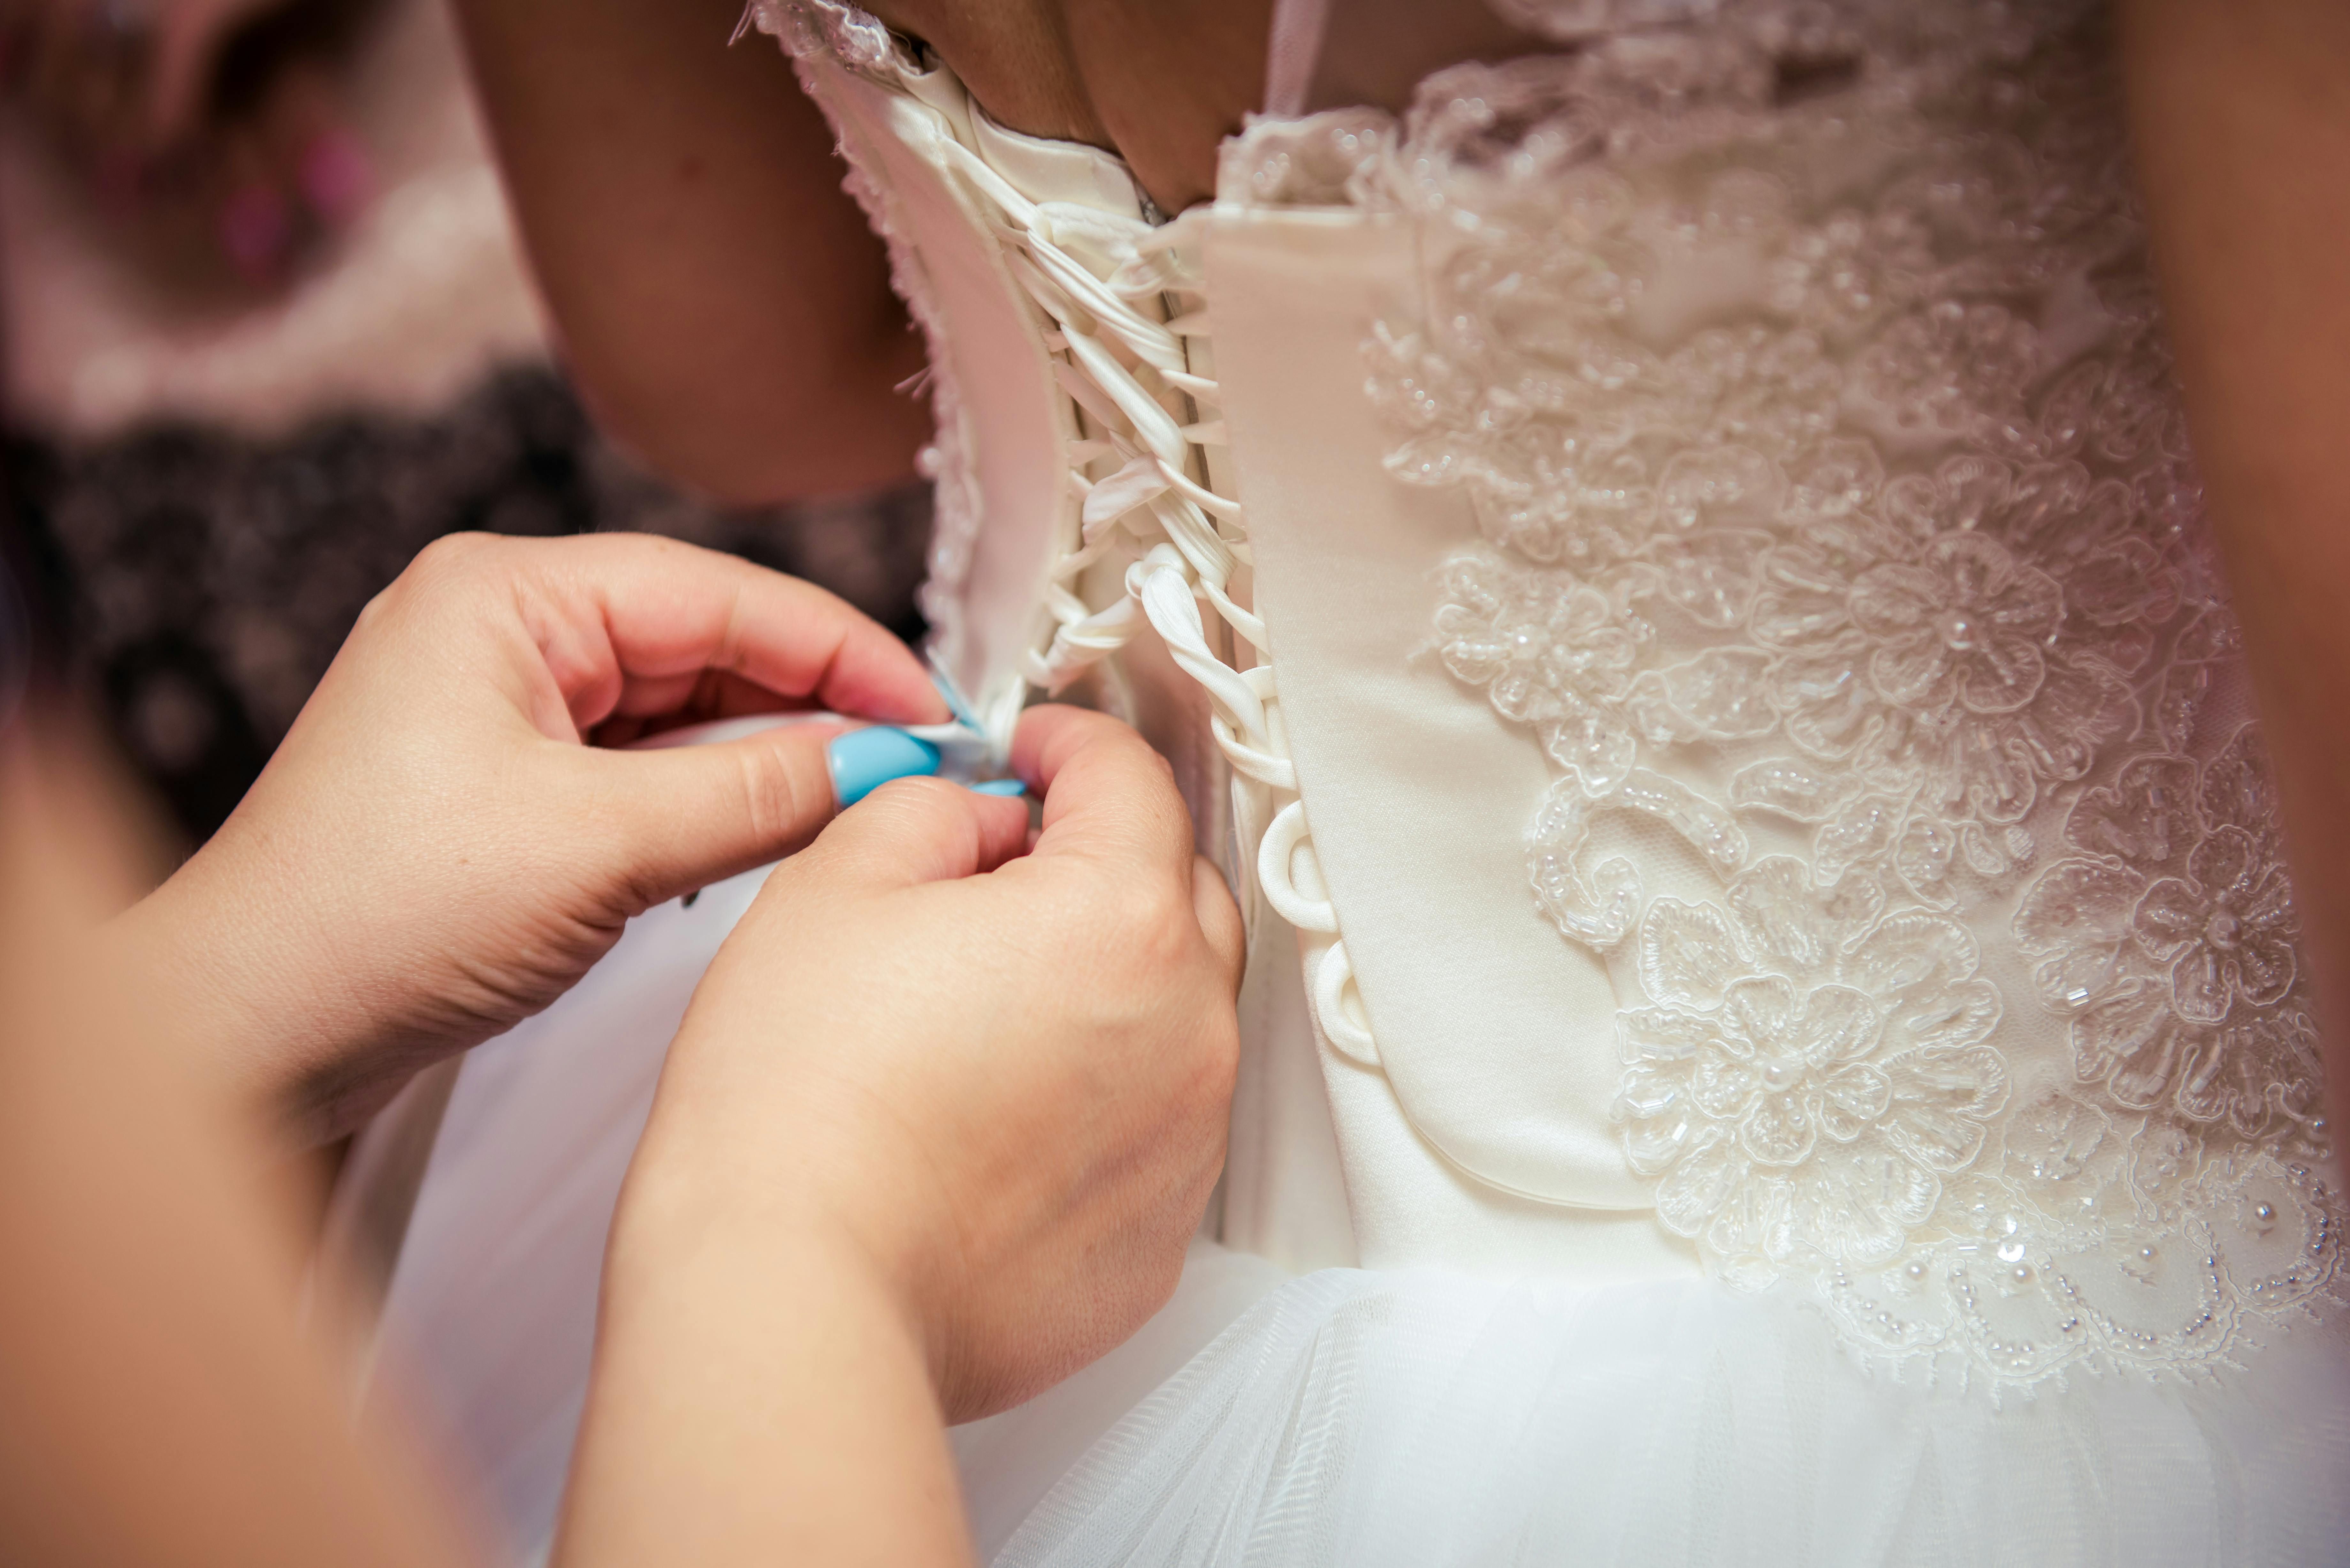 Свекровь тайком померила свадебное платье невесты, несмотря на запрет